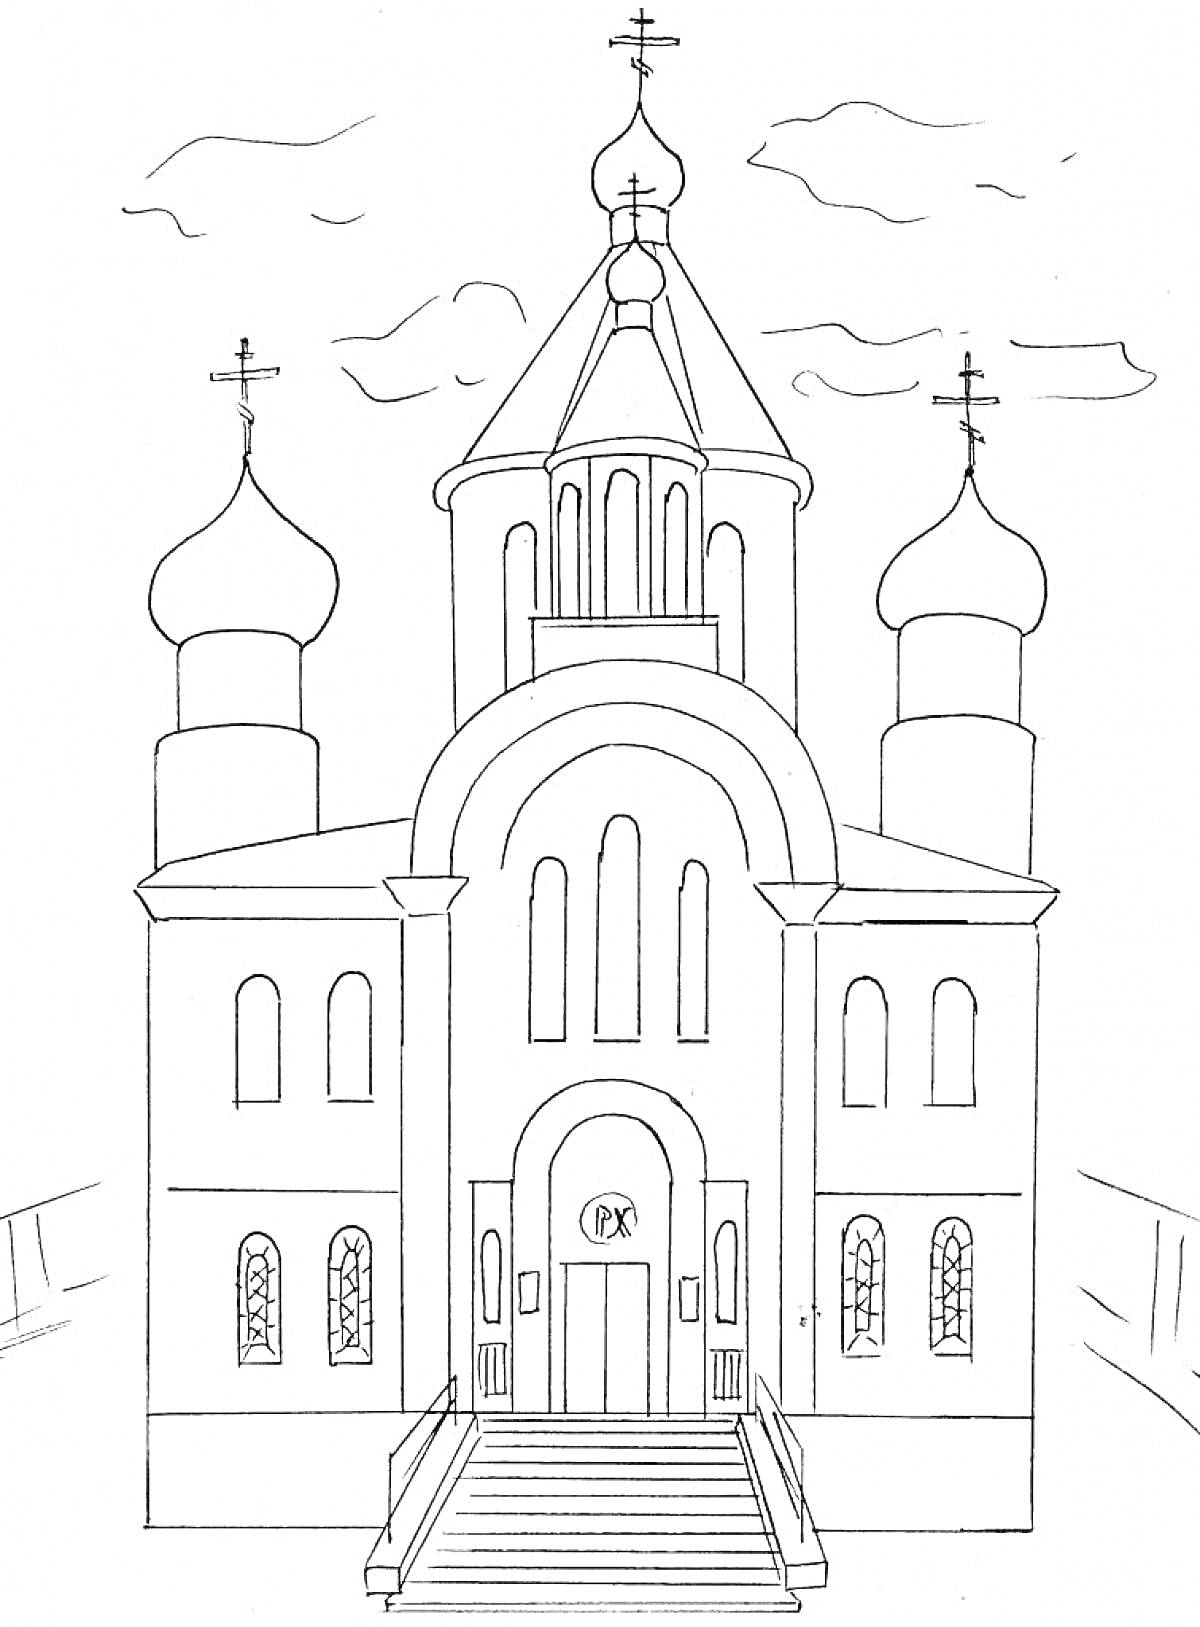 Раскраска храм с куполами и крестами, с центральной башней, крыльцом и лестницей, настенными окнами, и изображением букв 